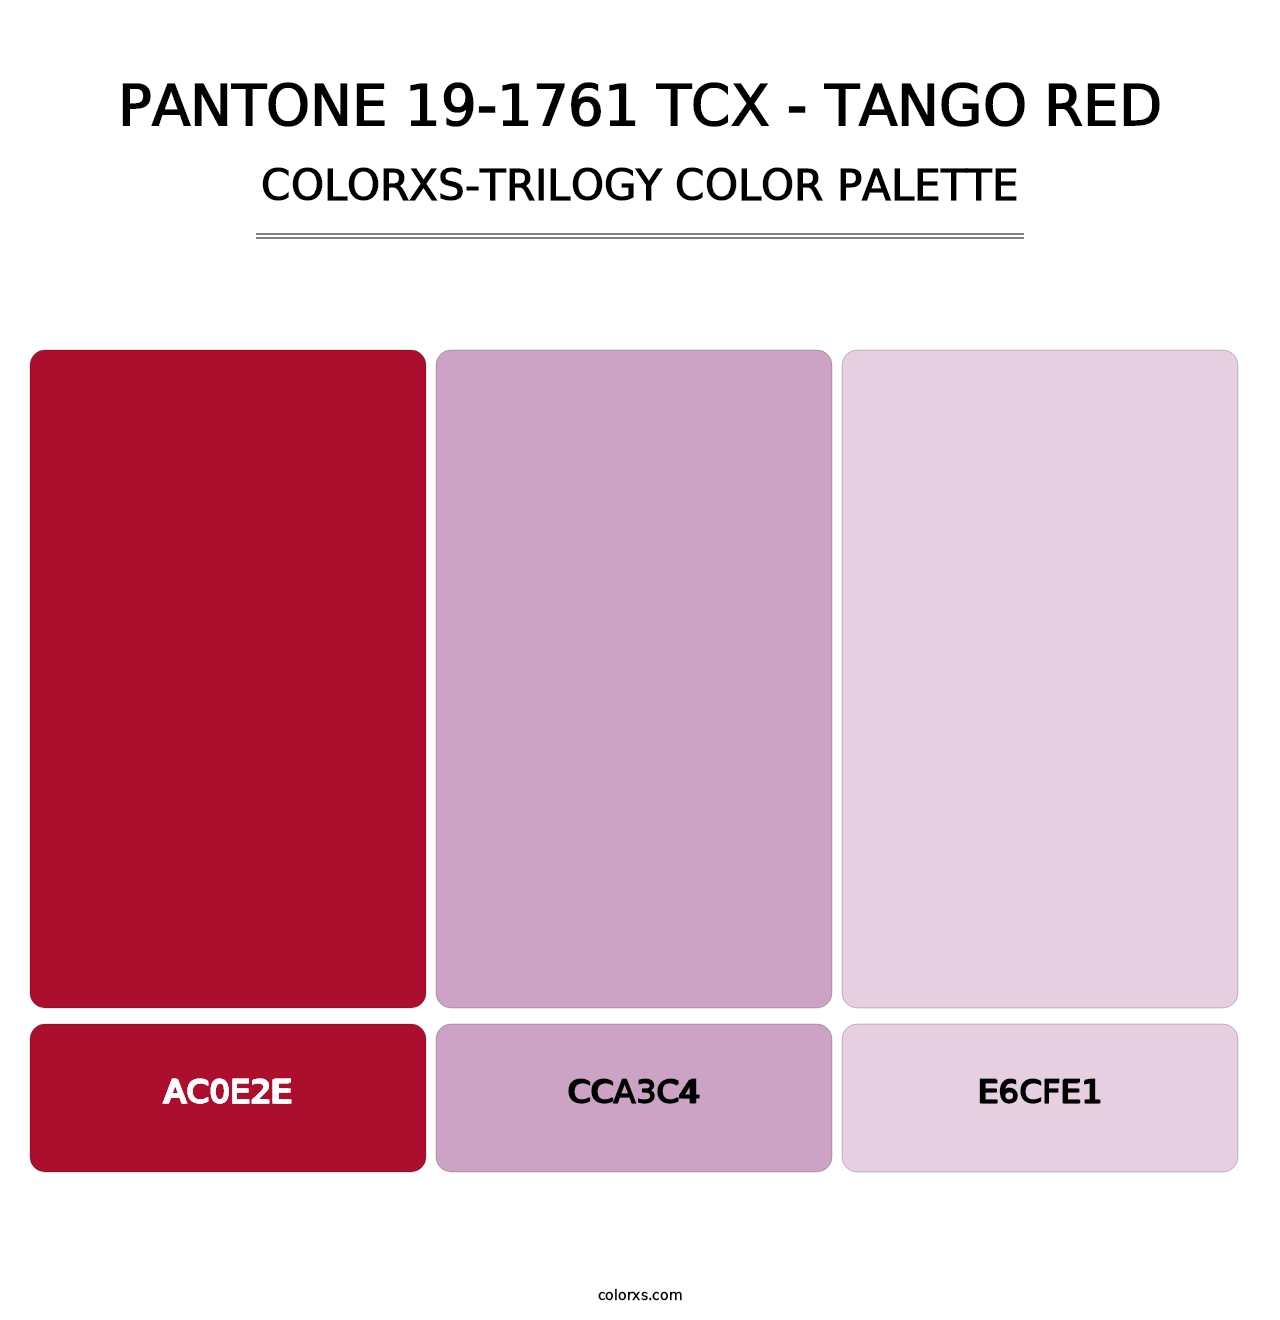 PANTONE 19-1761 TCX - Tango Red - Colorxs Trilogy Palette